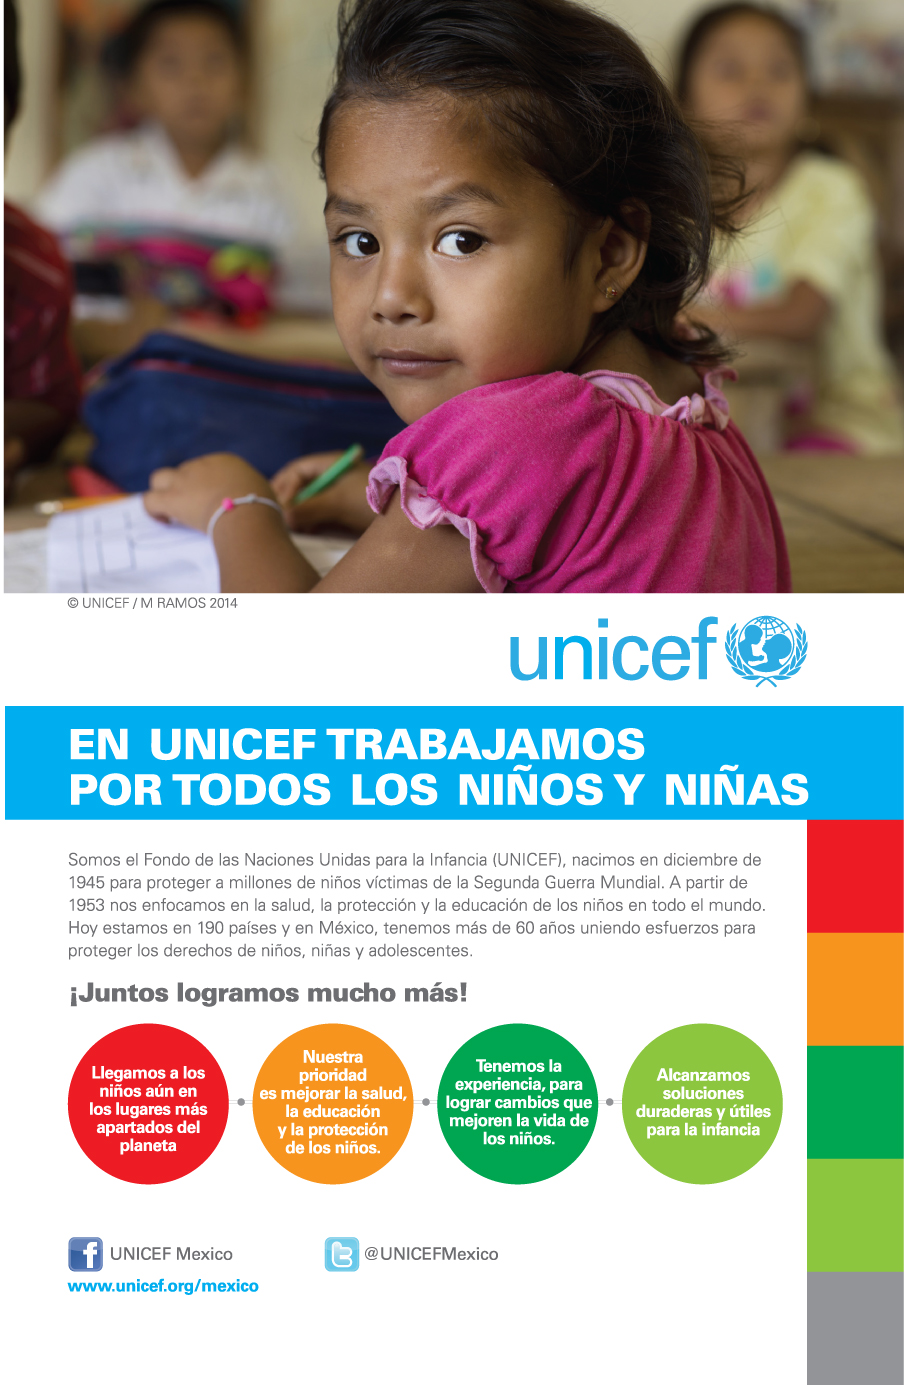 En UNICEF trabajamos para todos los niños y niñas